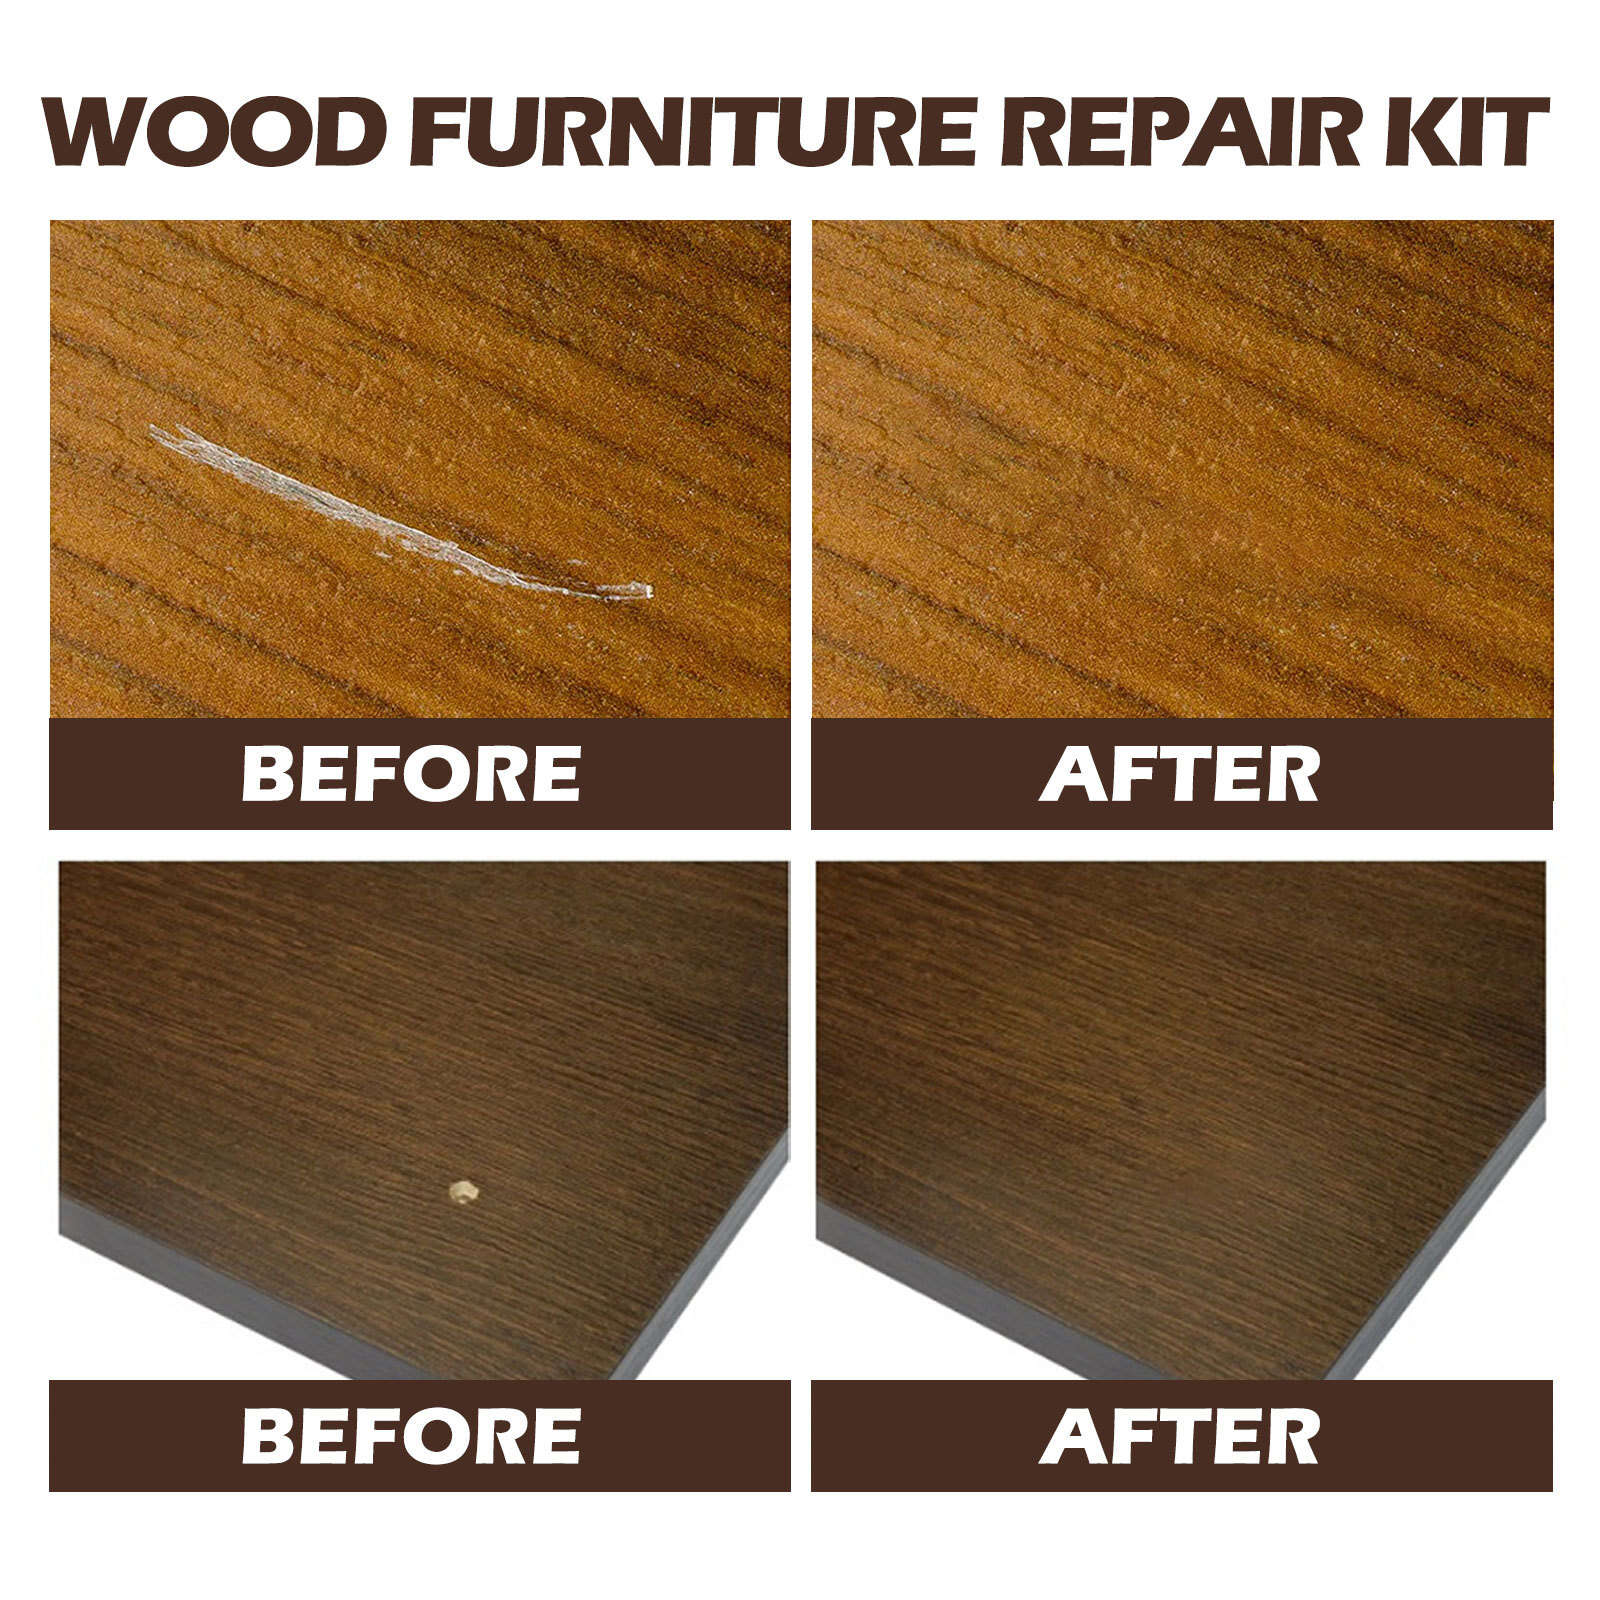 Hardwood Floor Repair Kit, Wood Furniture Repair Kit -19 Pcs Wood Touch up  Wax w